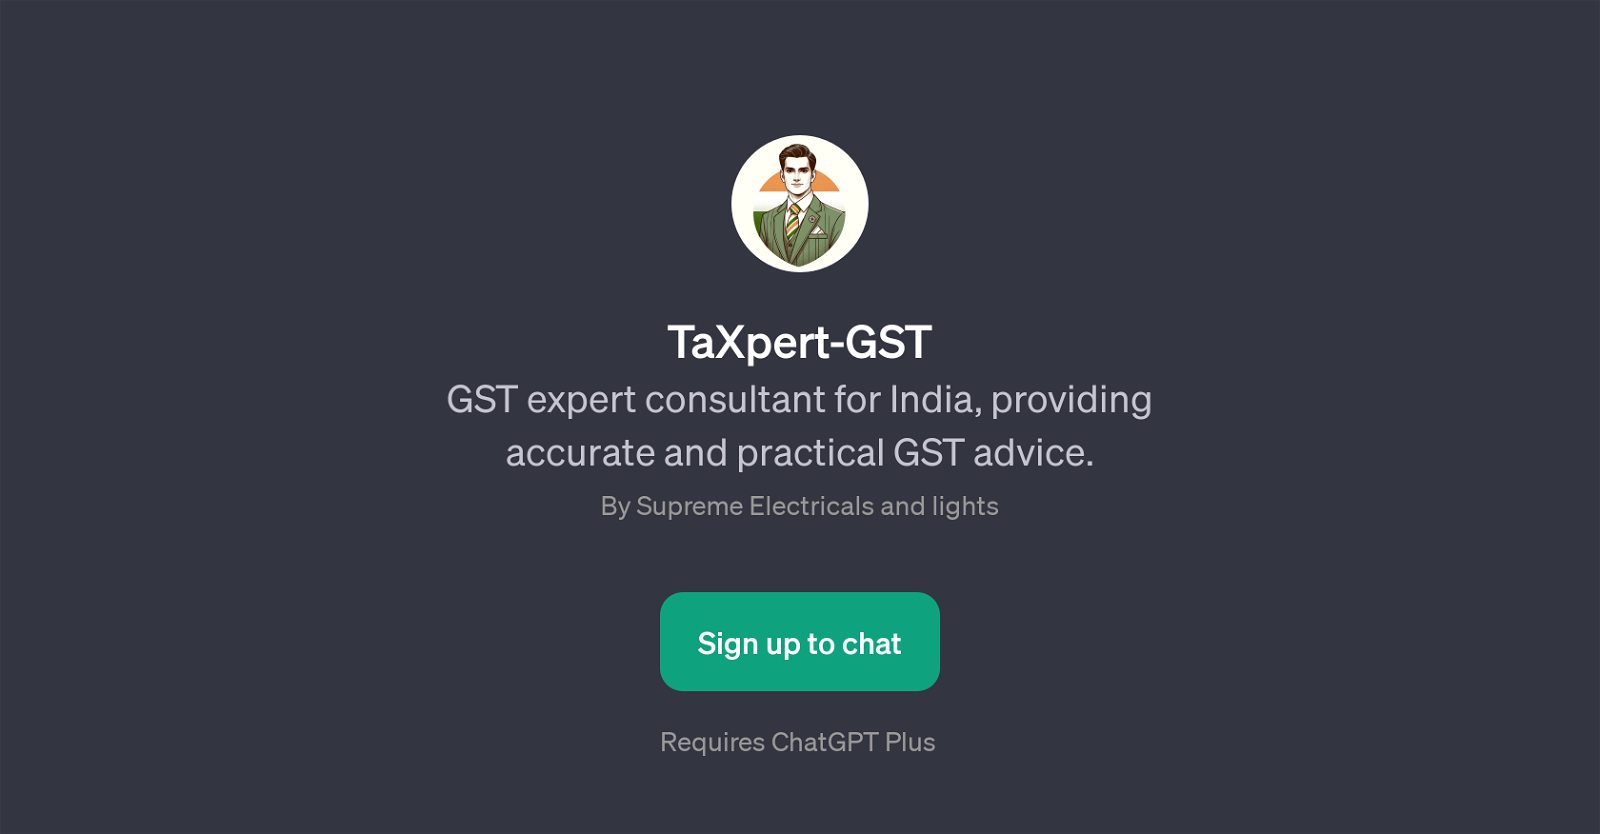 TaXpert-GST website